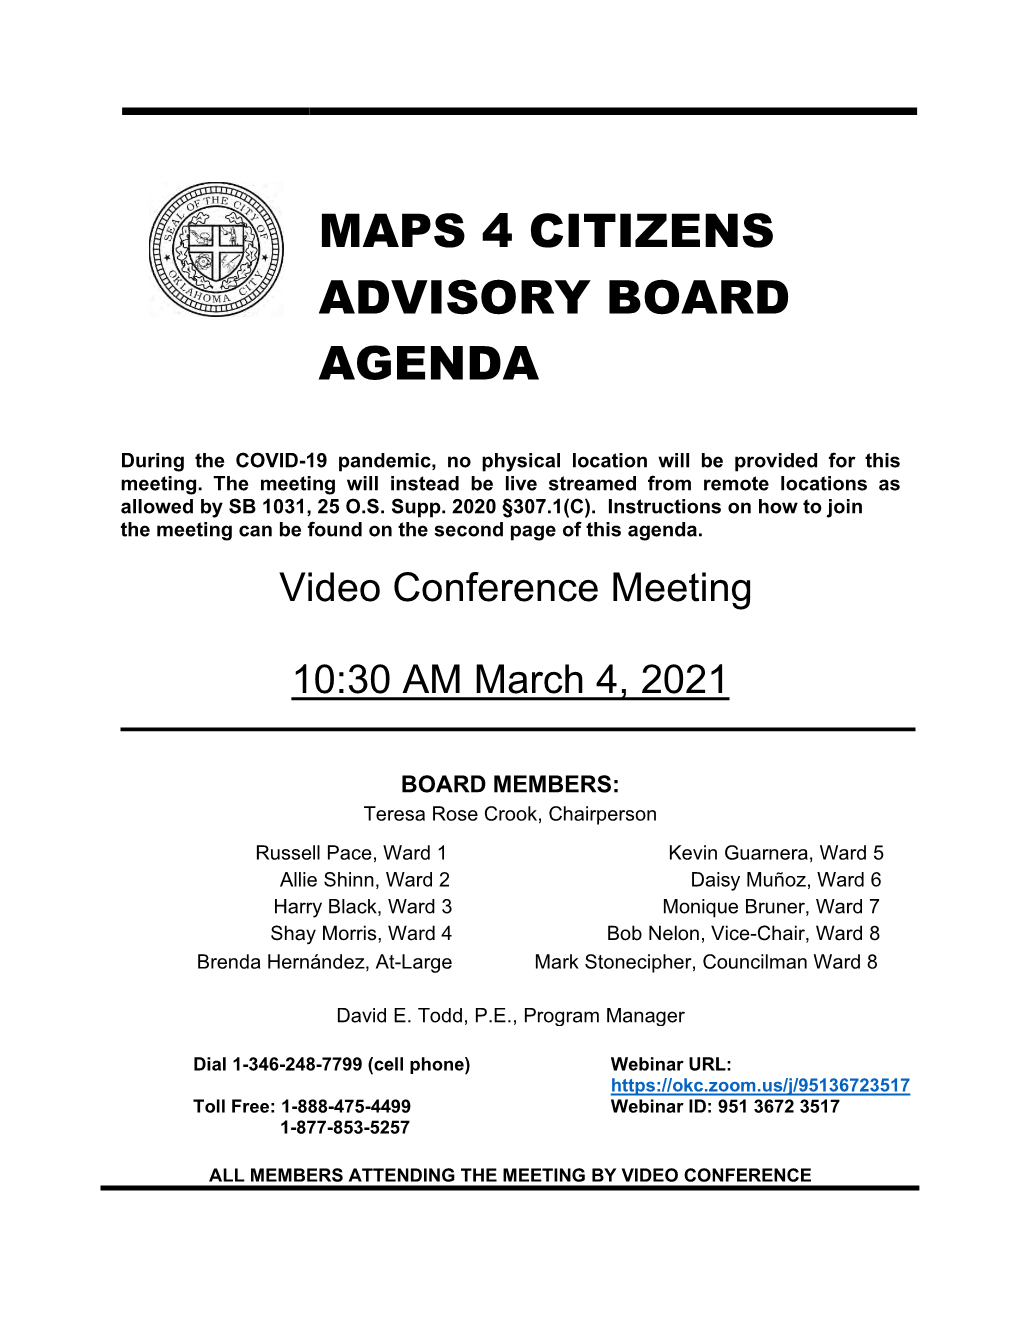 Maps 4 Citizens Advisory Board Agenda